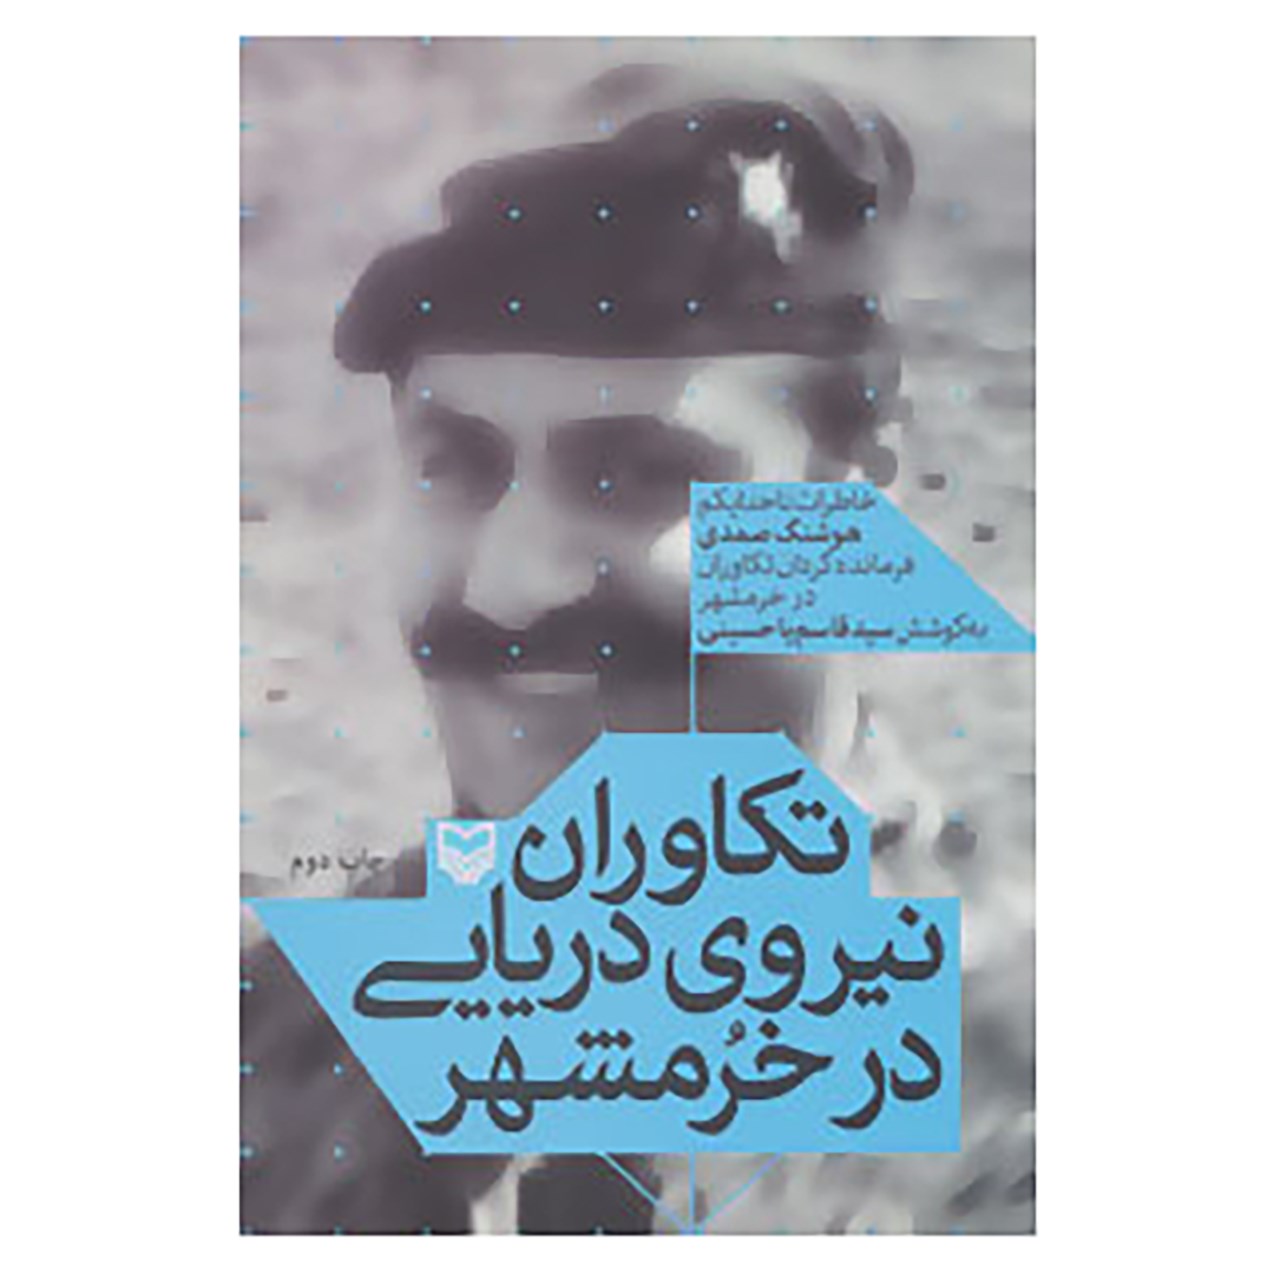 کتاب تکاوران نیروی دریایی در خرمشهر اثر هوشنگ صمدی کلخورانی